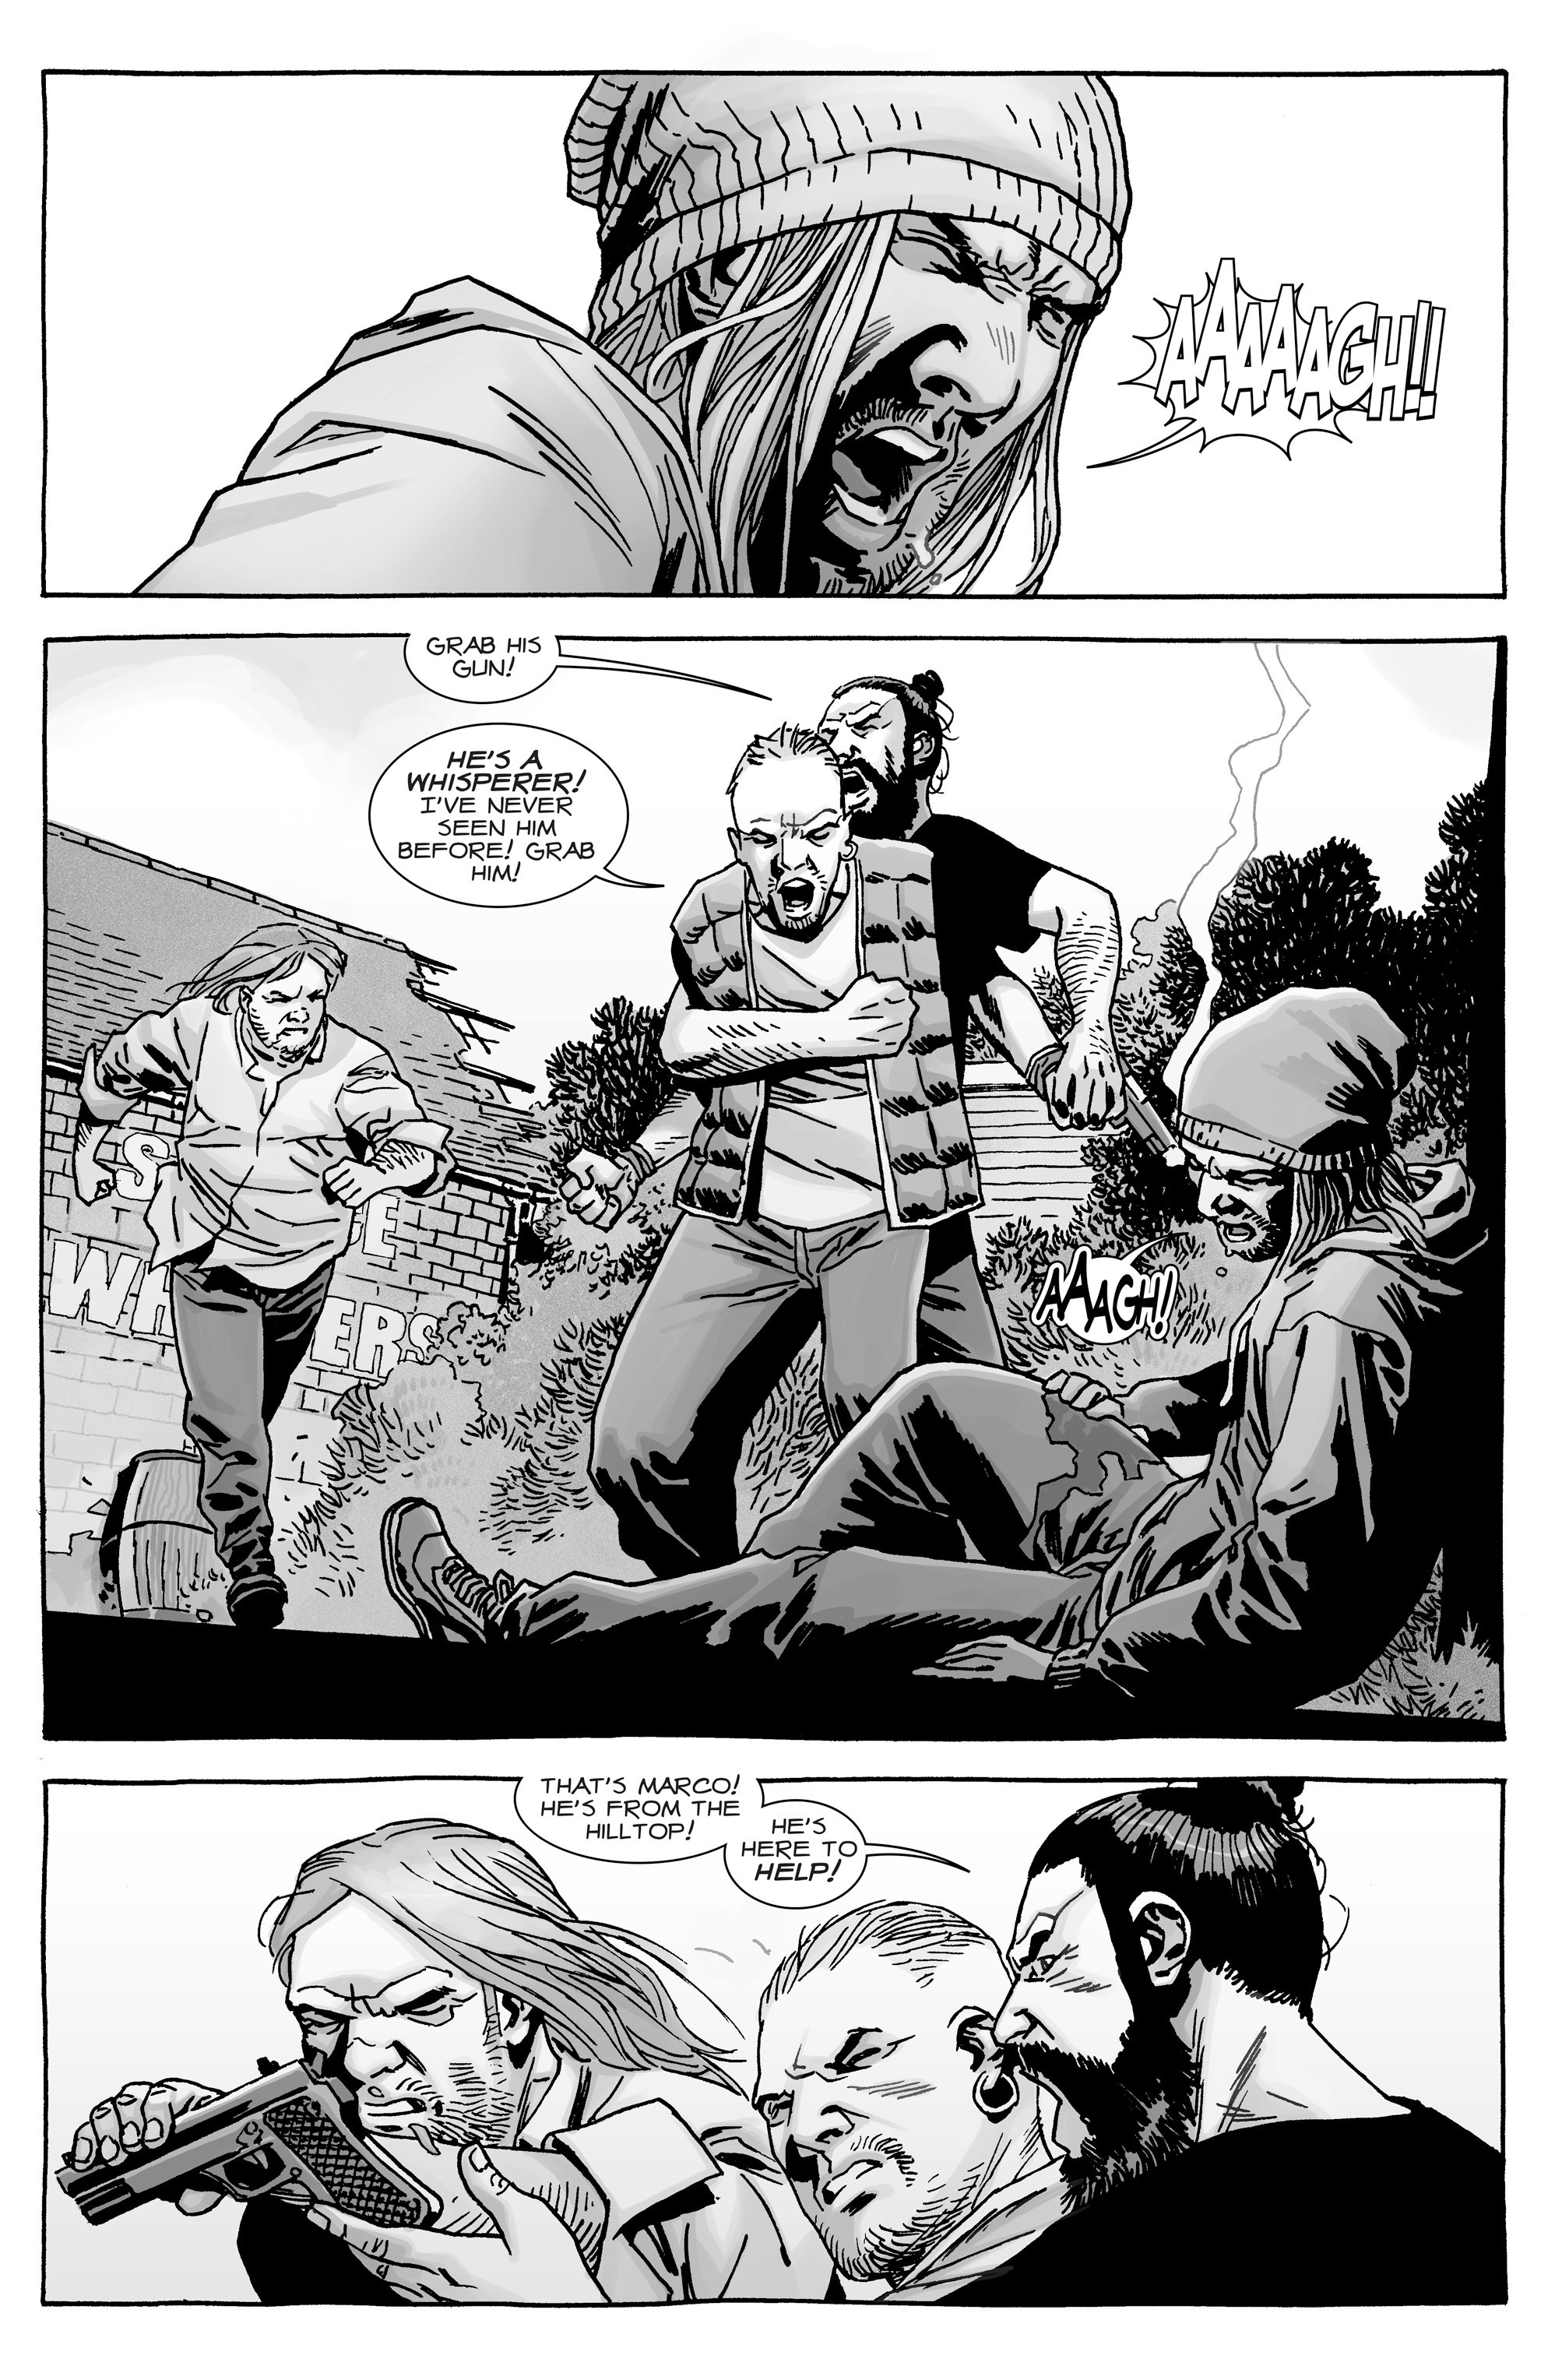 Read online The Walking Dead comic -  Issue #153 - 11